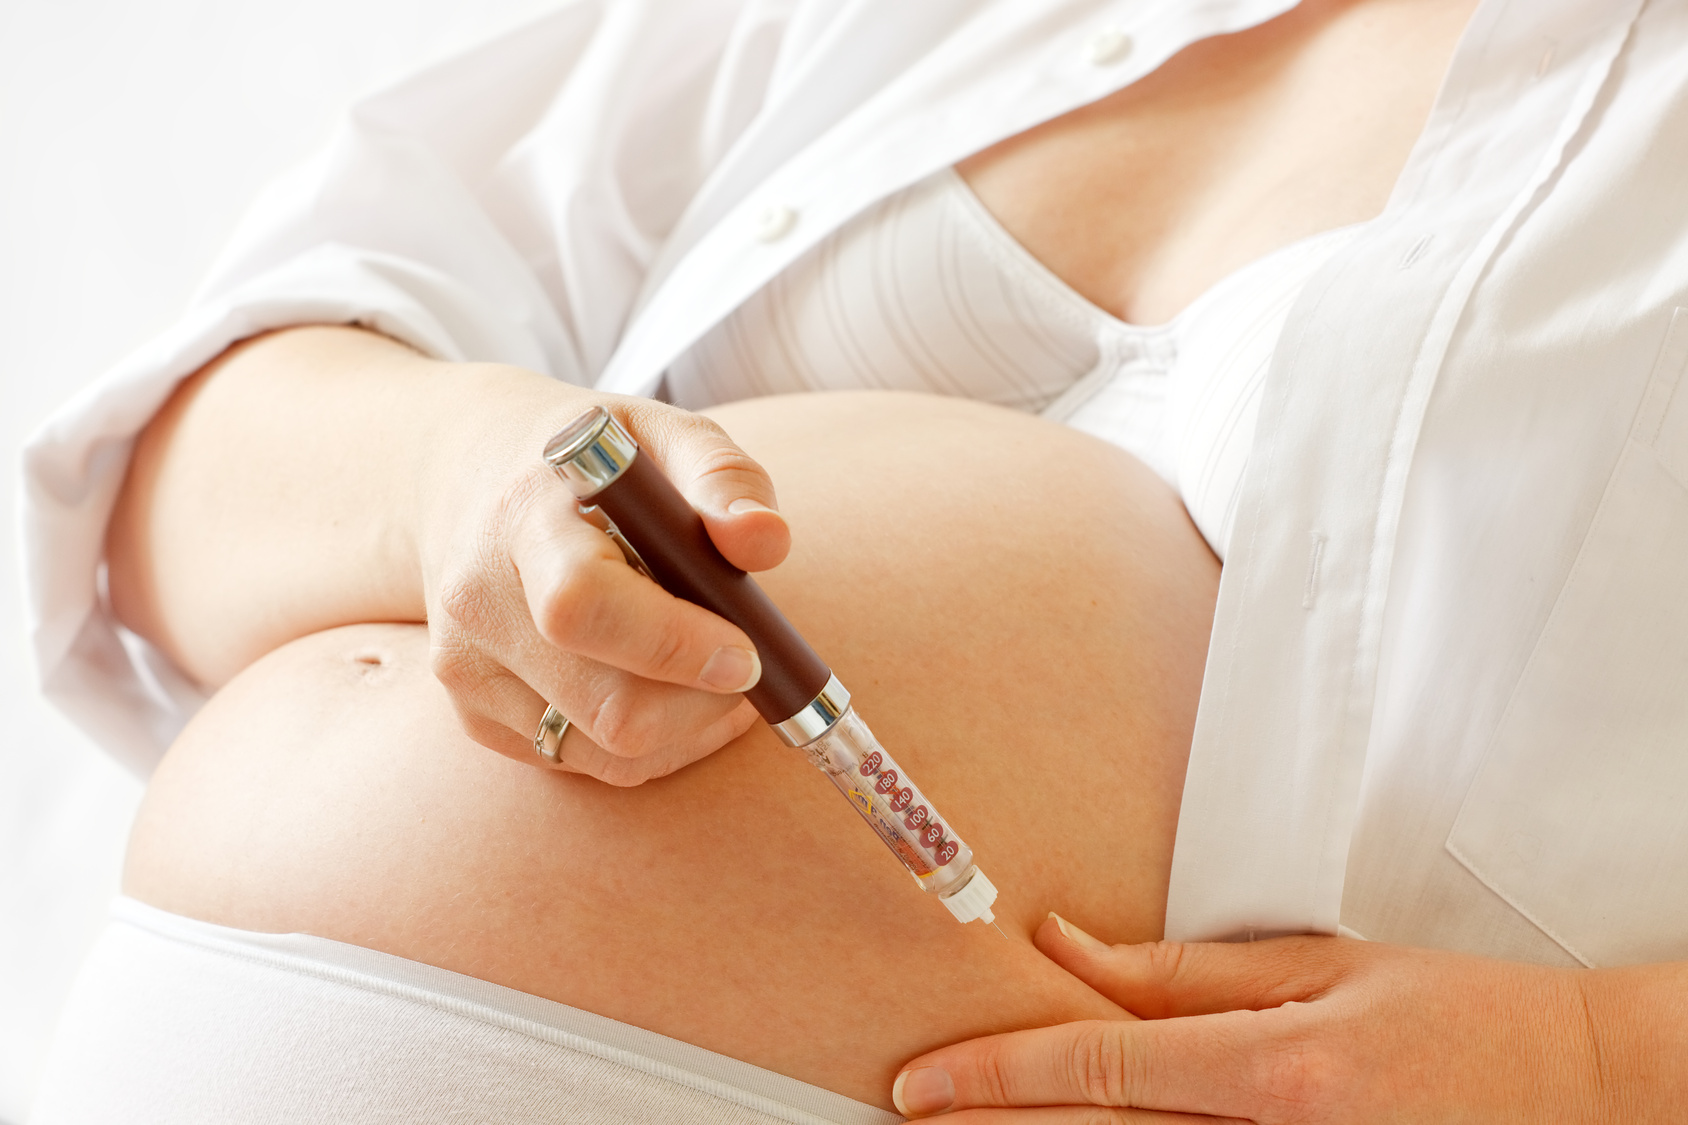 Busco información de embarazo con Lantus - Diabetes Foro 